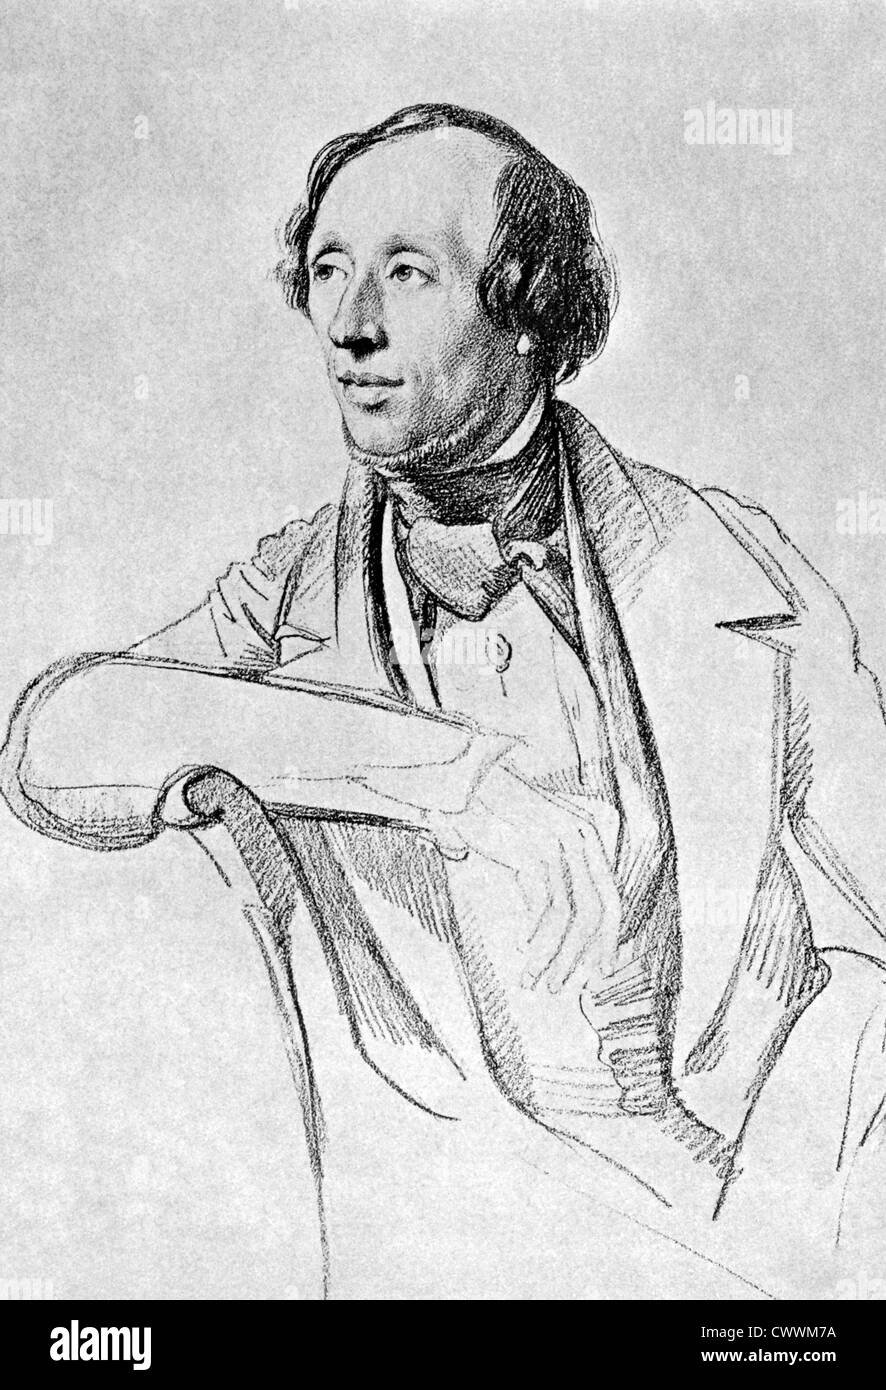 Hans Christian Andersen (1805-1875) auf antiken Druck aus dem Jahre 1899. Dänischer Autor, Märchen Schriftsteller und Dichter. Stockfoto